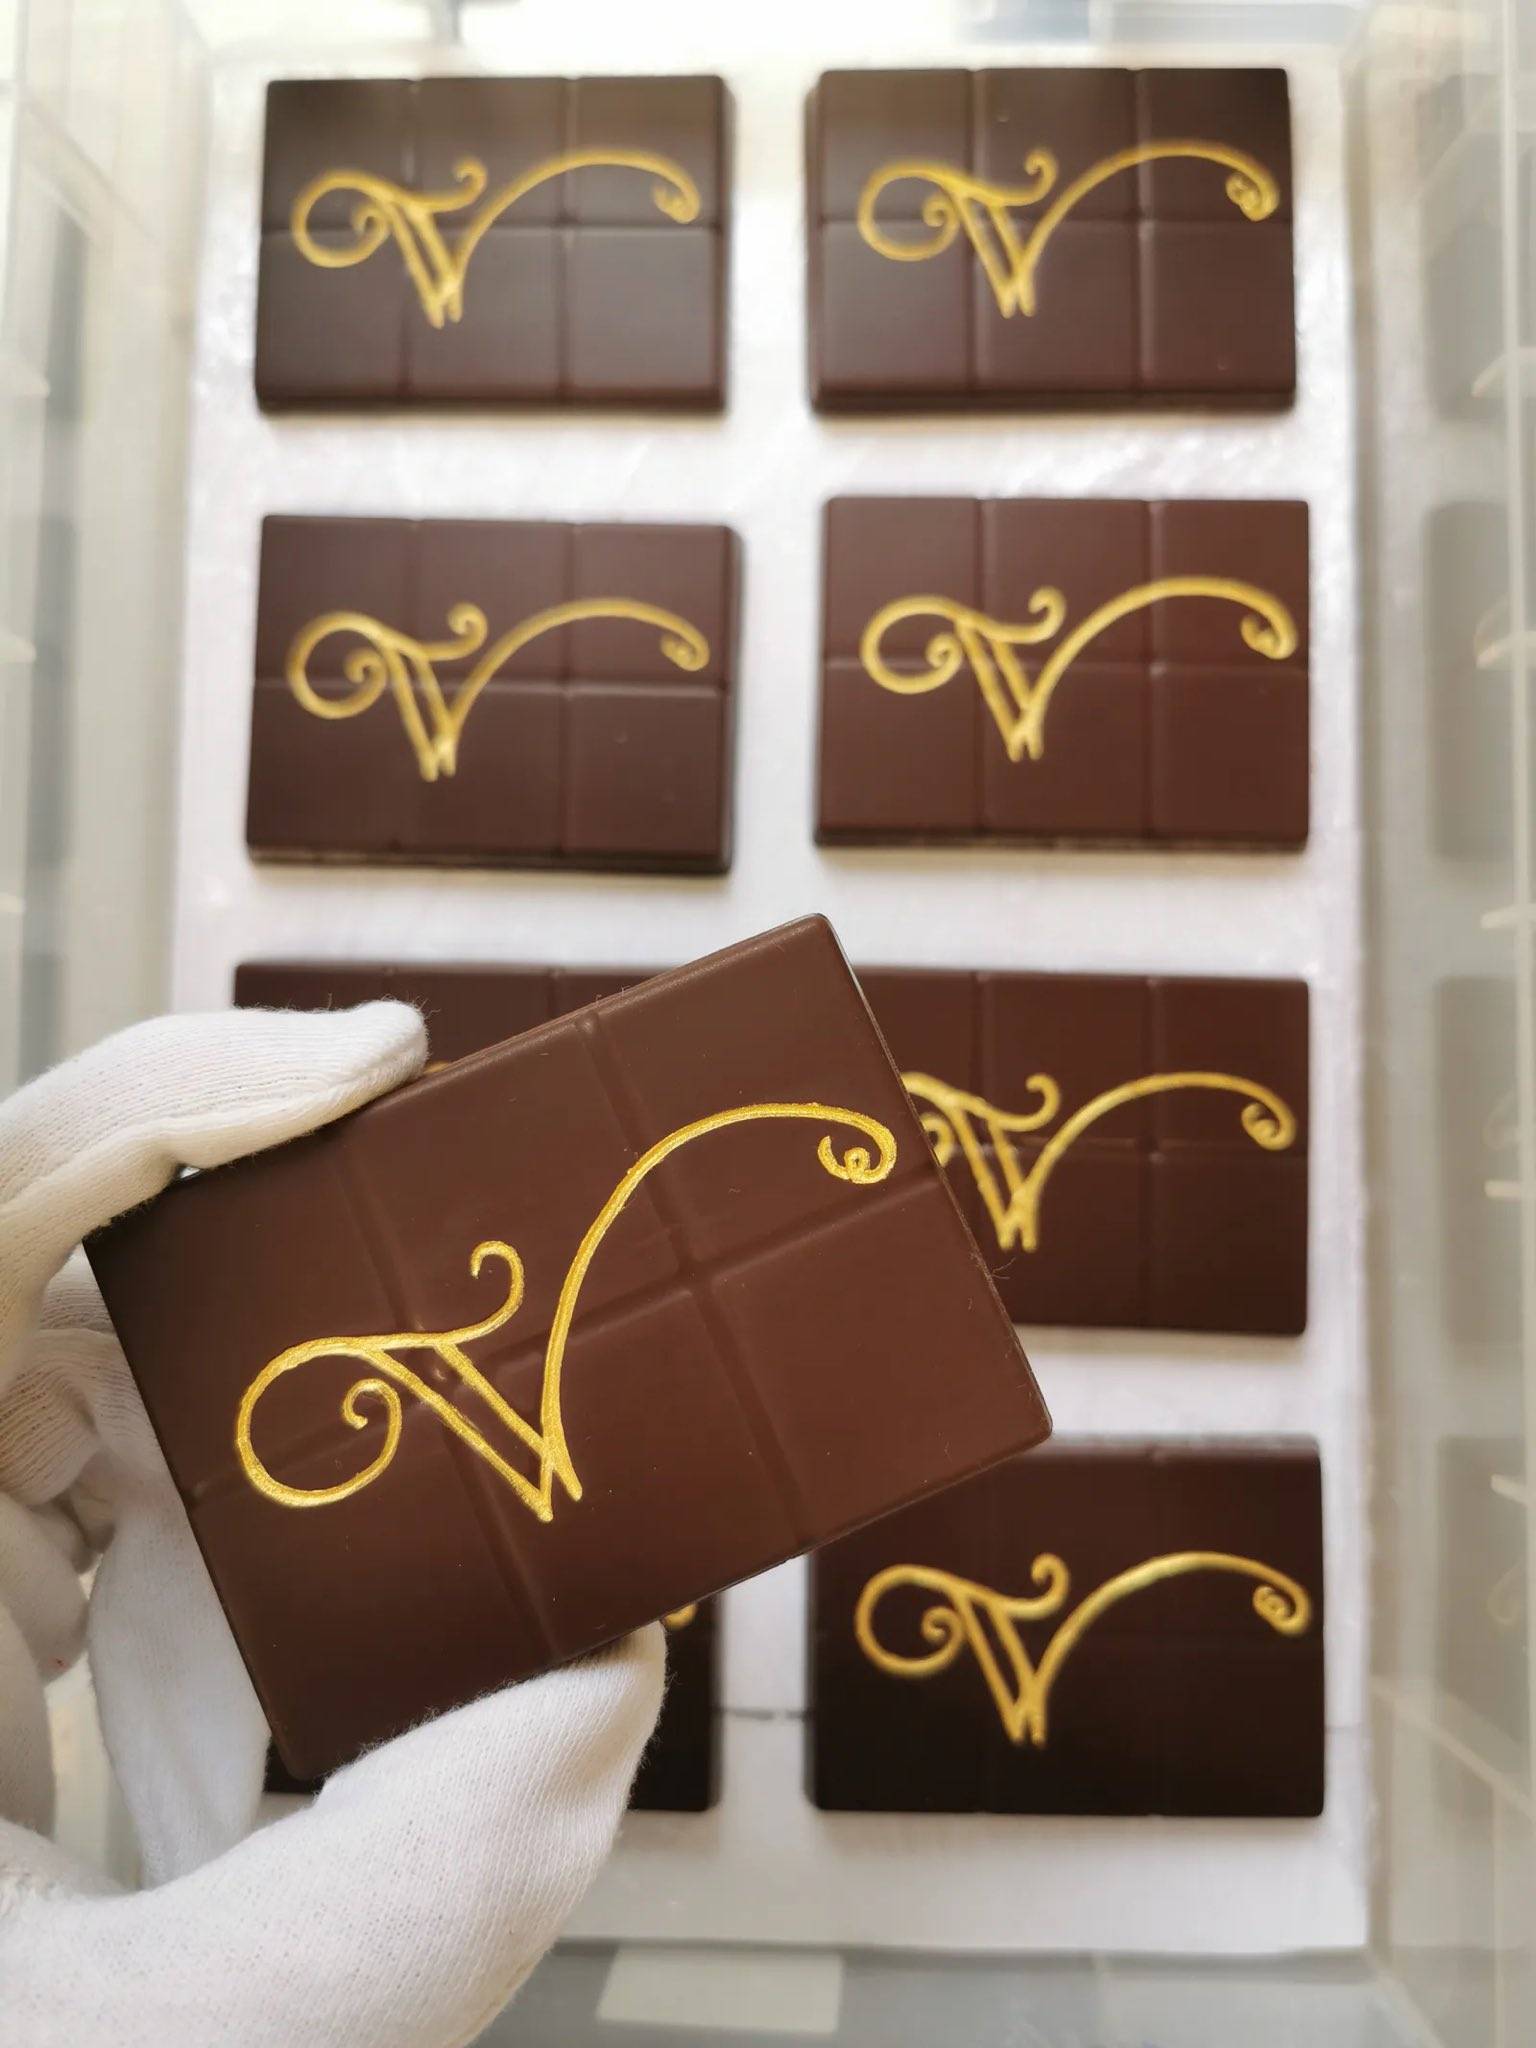 웡카 촬영 때 사용된 실제 초콜릿들을 만든 쇼콜라티에분이 올려주신 웡카 초콜릿 사진들.twt | 인스티즈